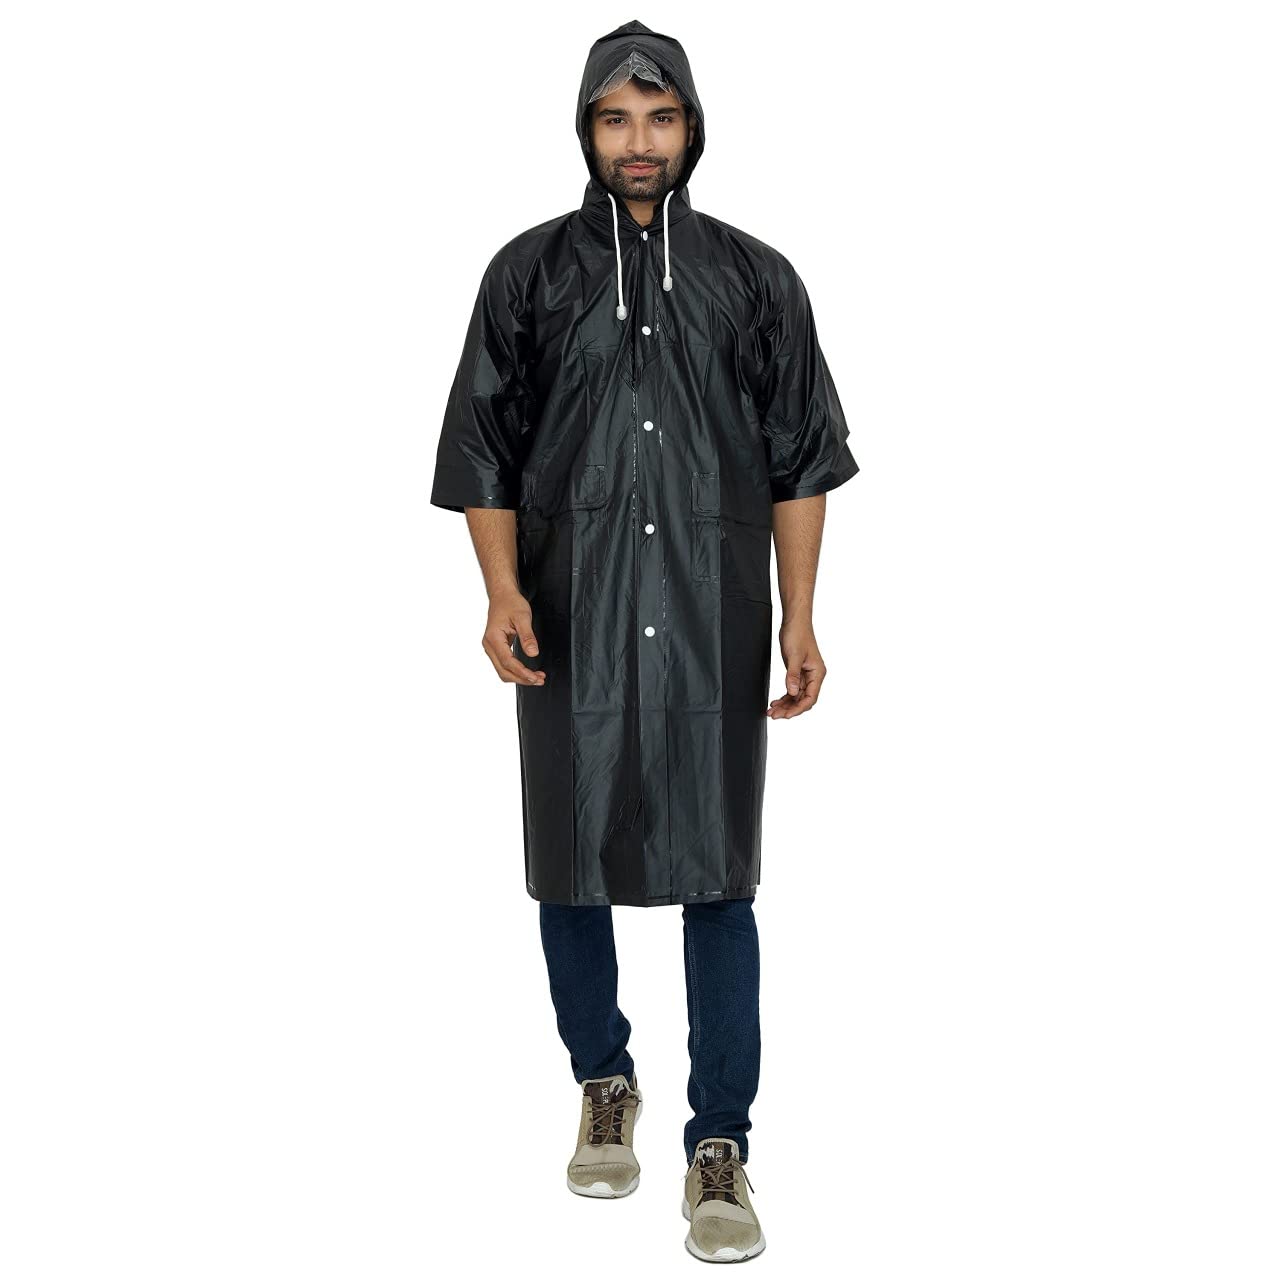 PVC Material Longcoat With Adjustable Hood – Metamersh